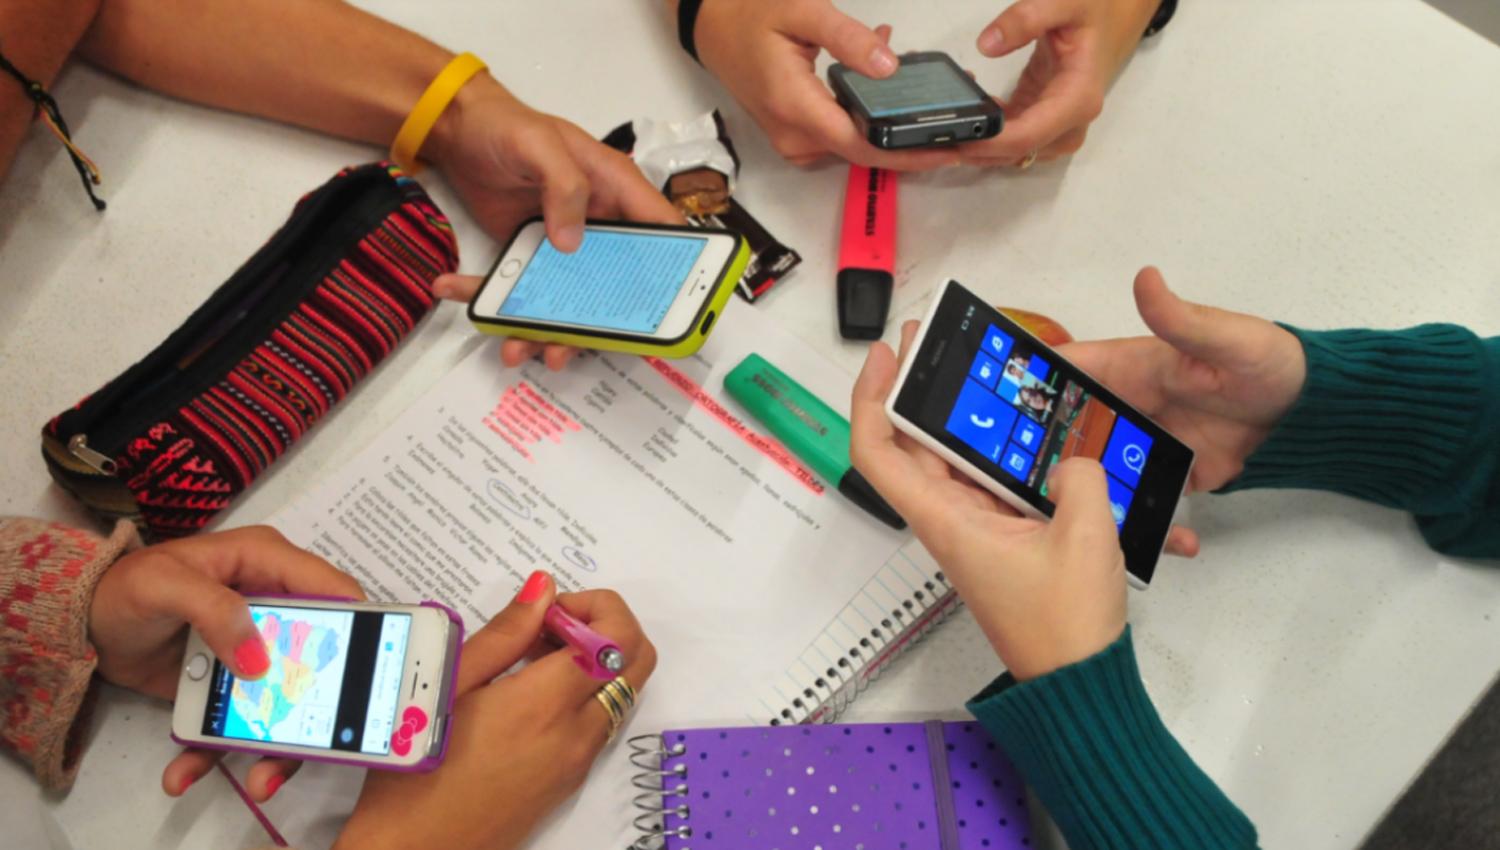 TENER EN CUENTA: Los adolescentes pueden estar 24 horas seguidas con el celular encedido.